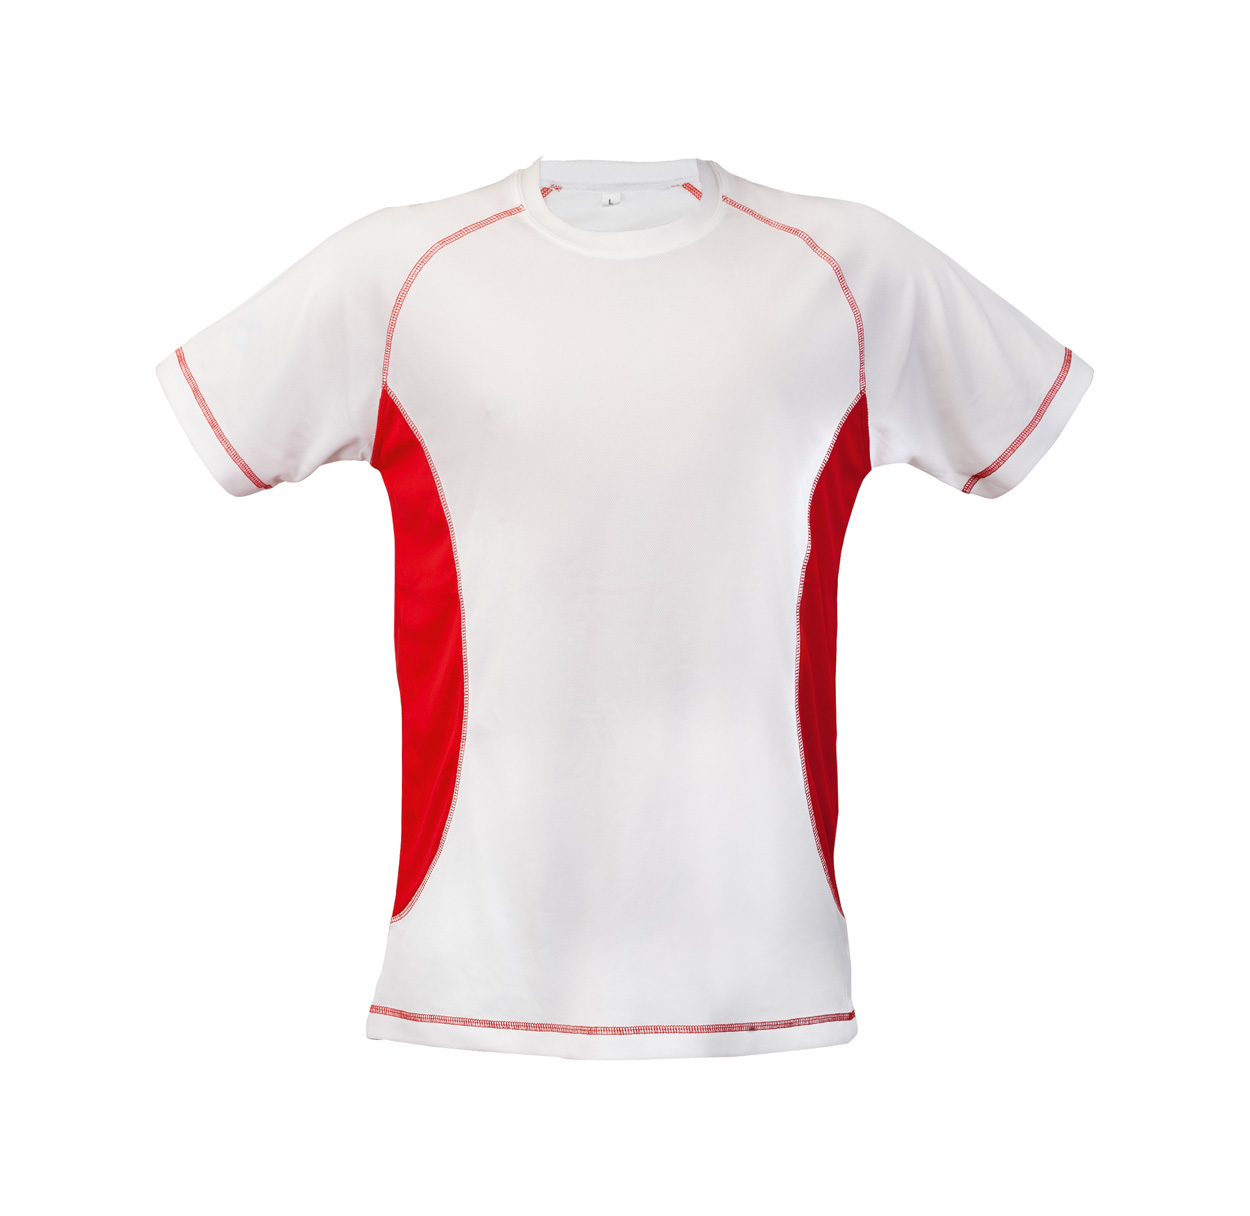 Футболка спортивная «Sport line Cross». G2 t-Shirt 2023. Футболка для спортсмена. Футболки командные спортивные. Купить футболку распродажа